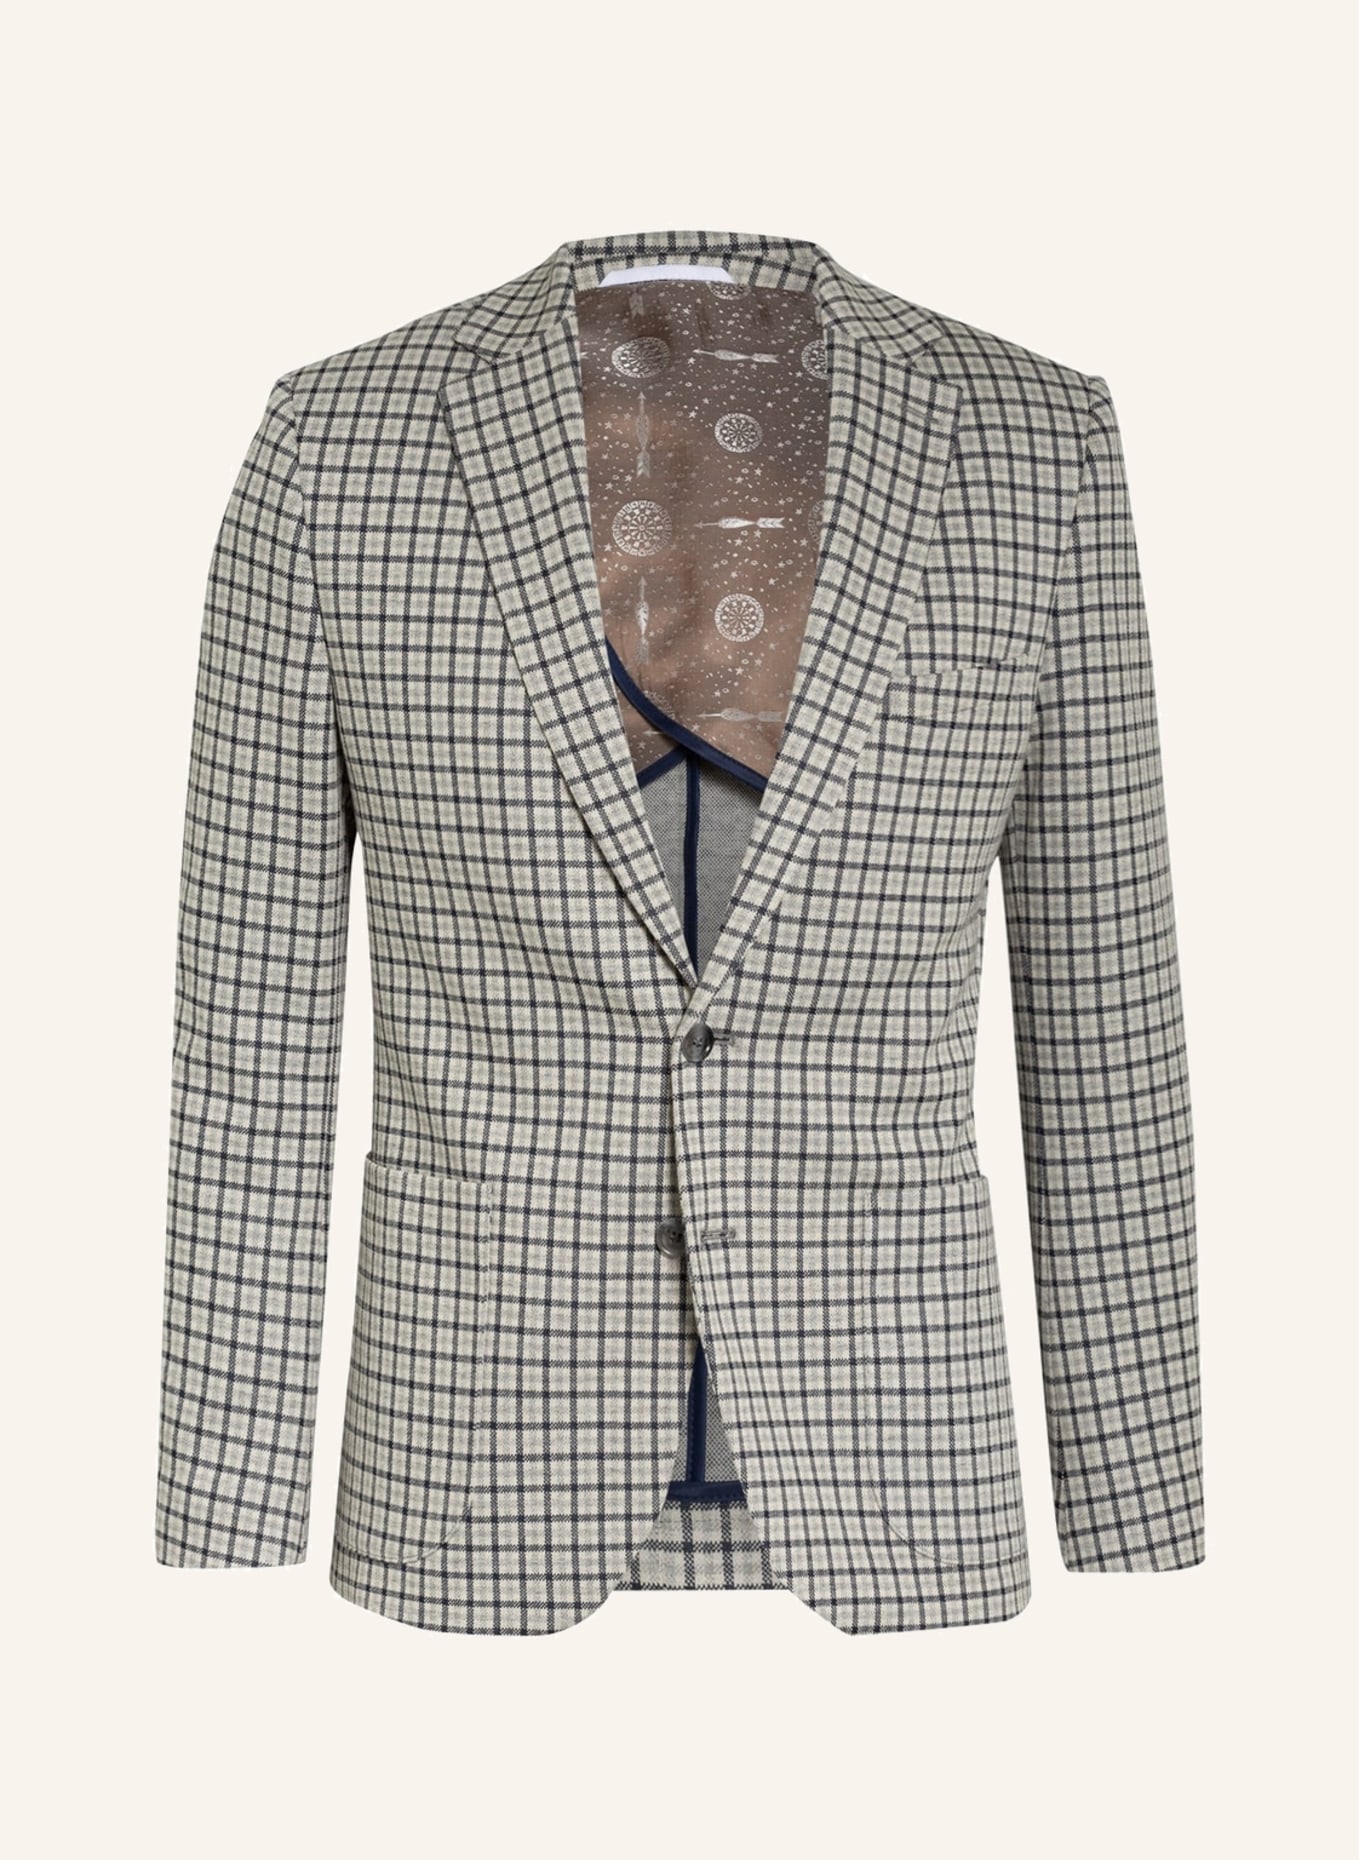 PAUL Suit jacket Slim Fit, Color: 670 NAVY (Image 1)